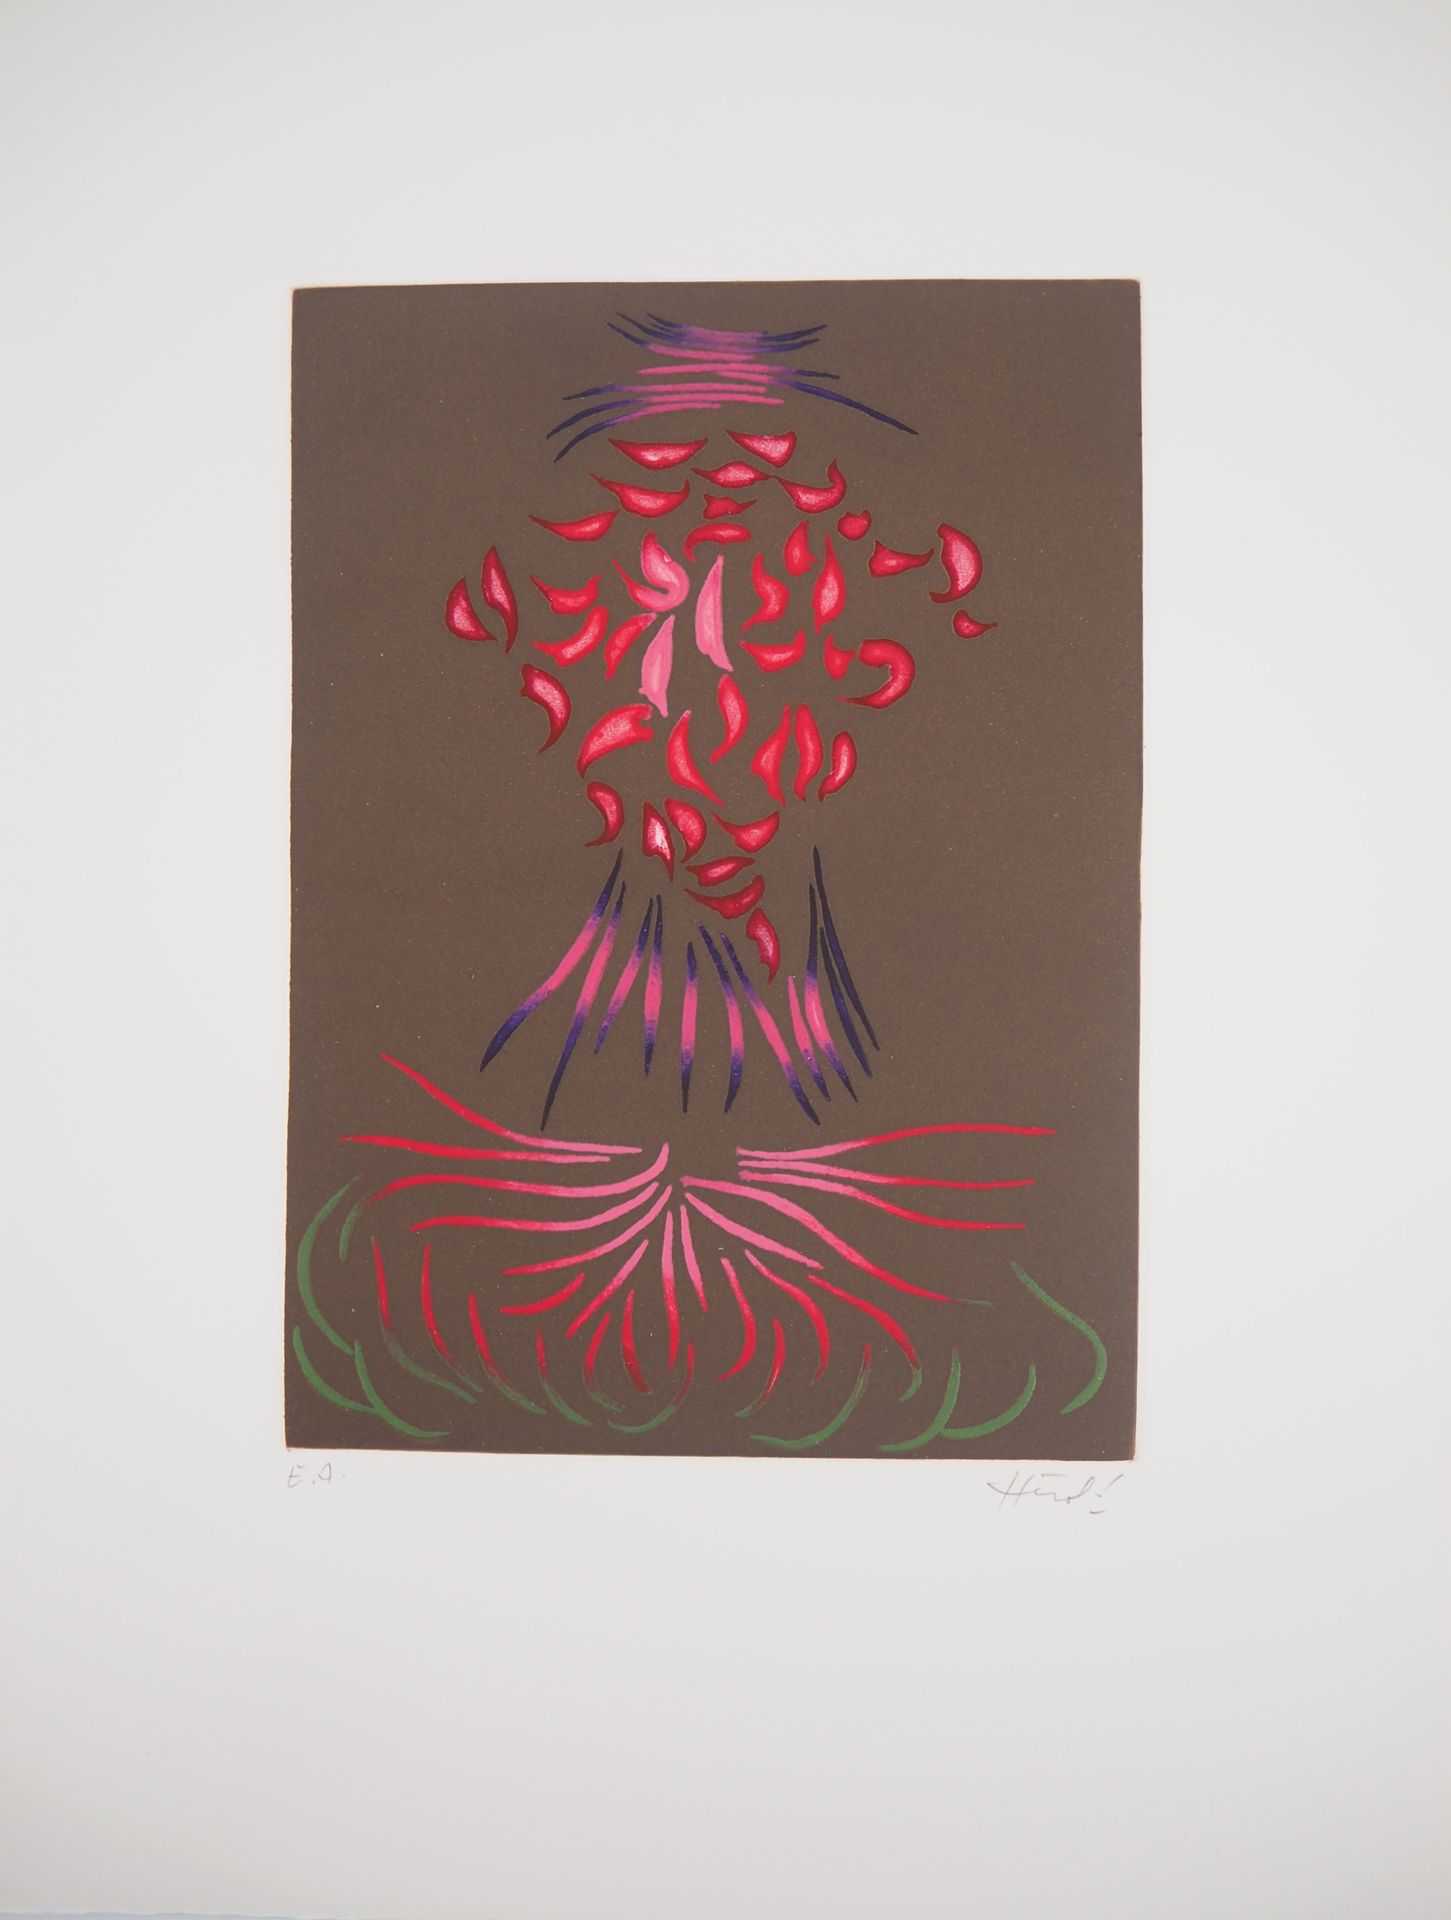 Jacques HEROLD Jacques HEROLD (1910-1985)

Fleur de célosie abstraite, 1975

Gra&hellip;